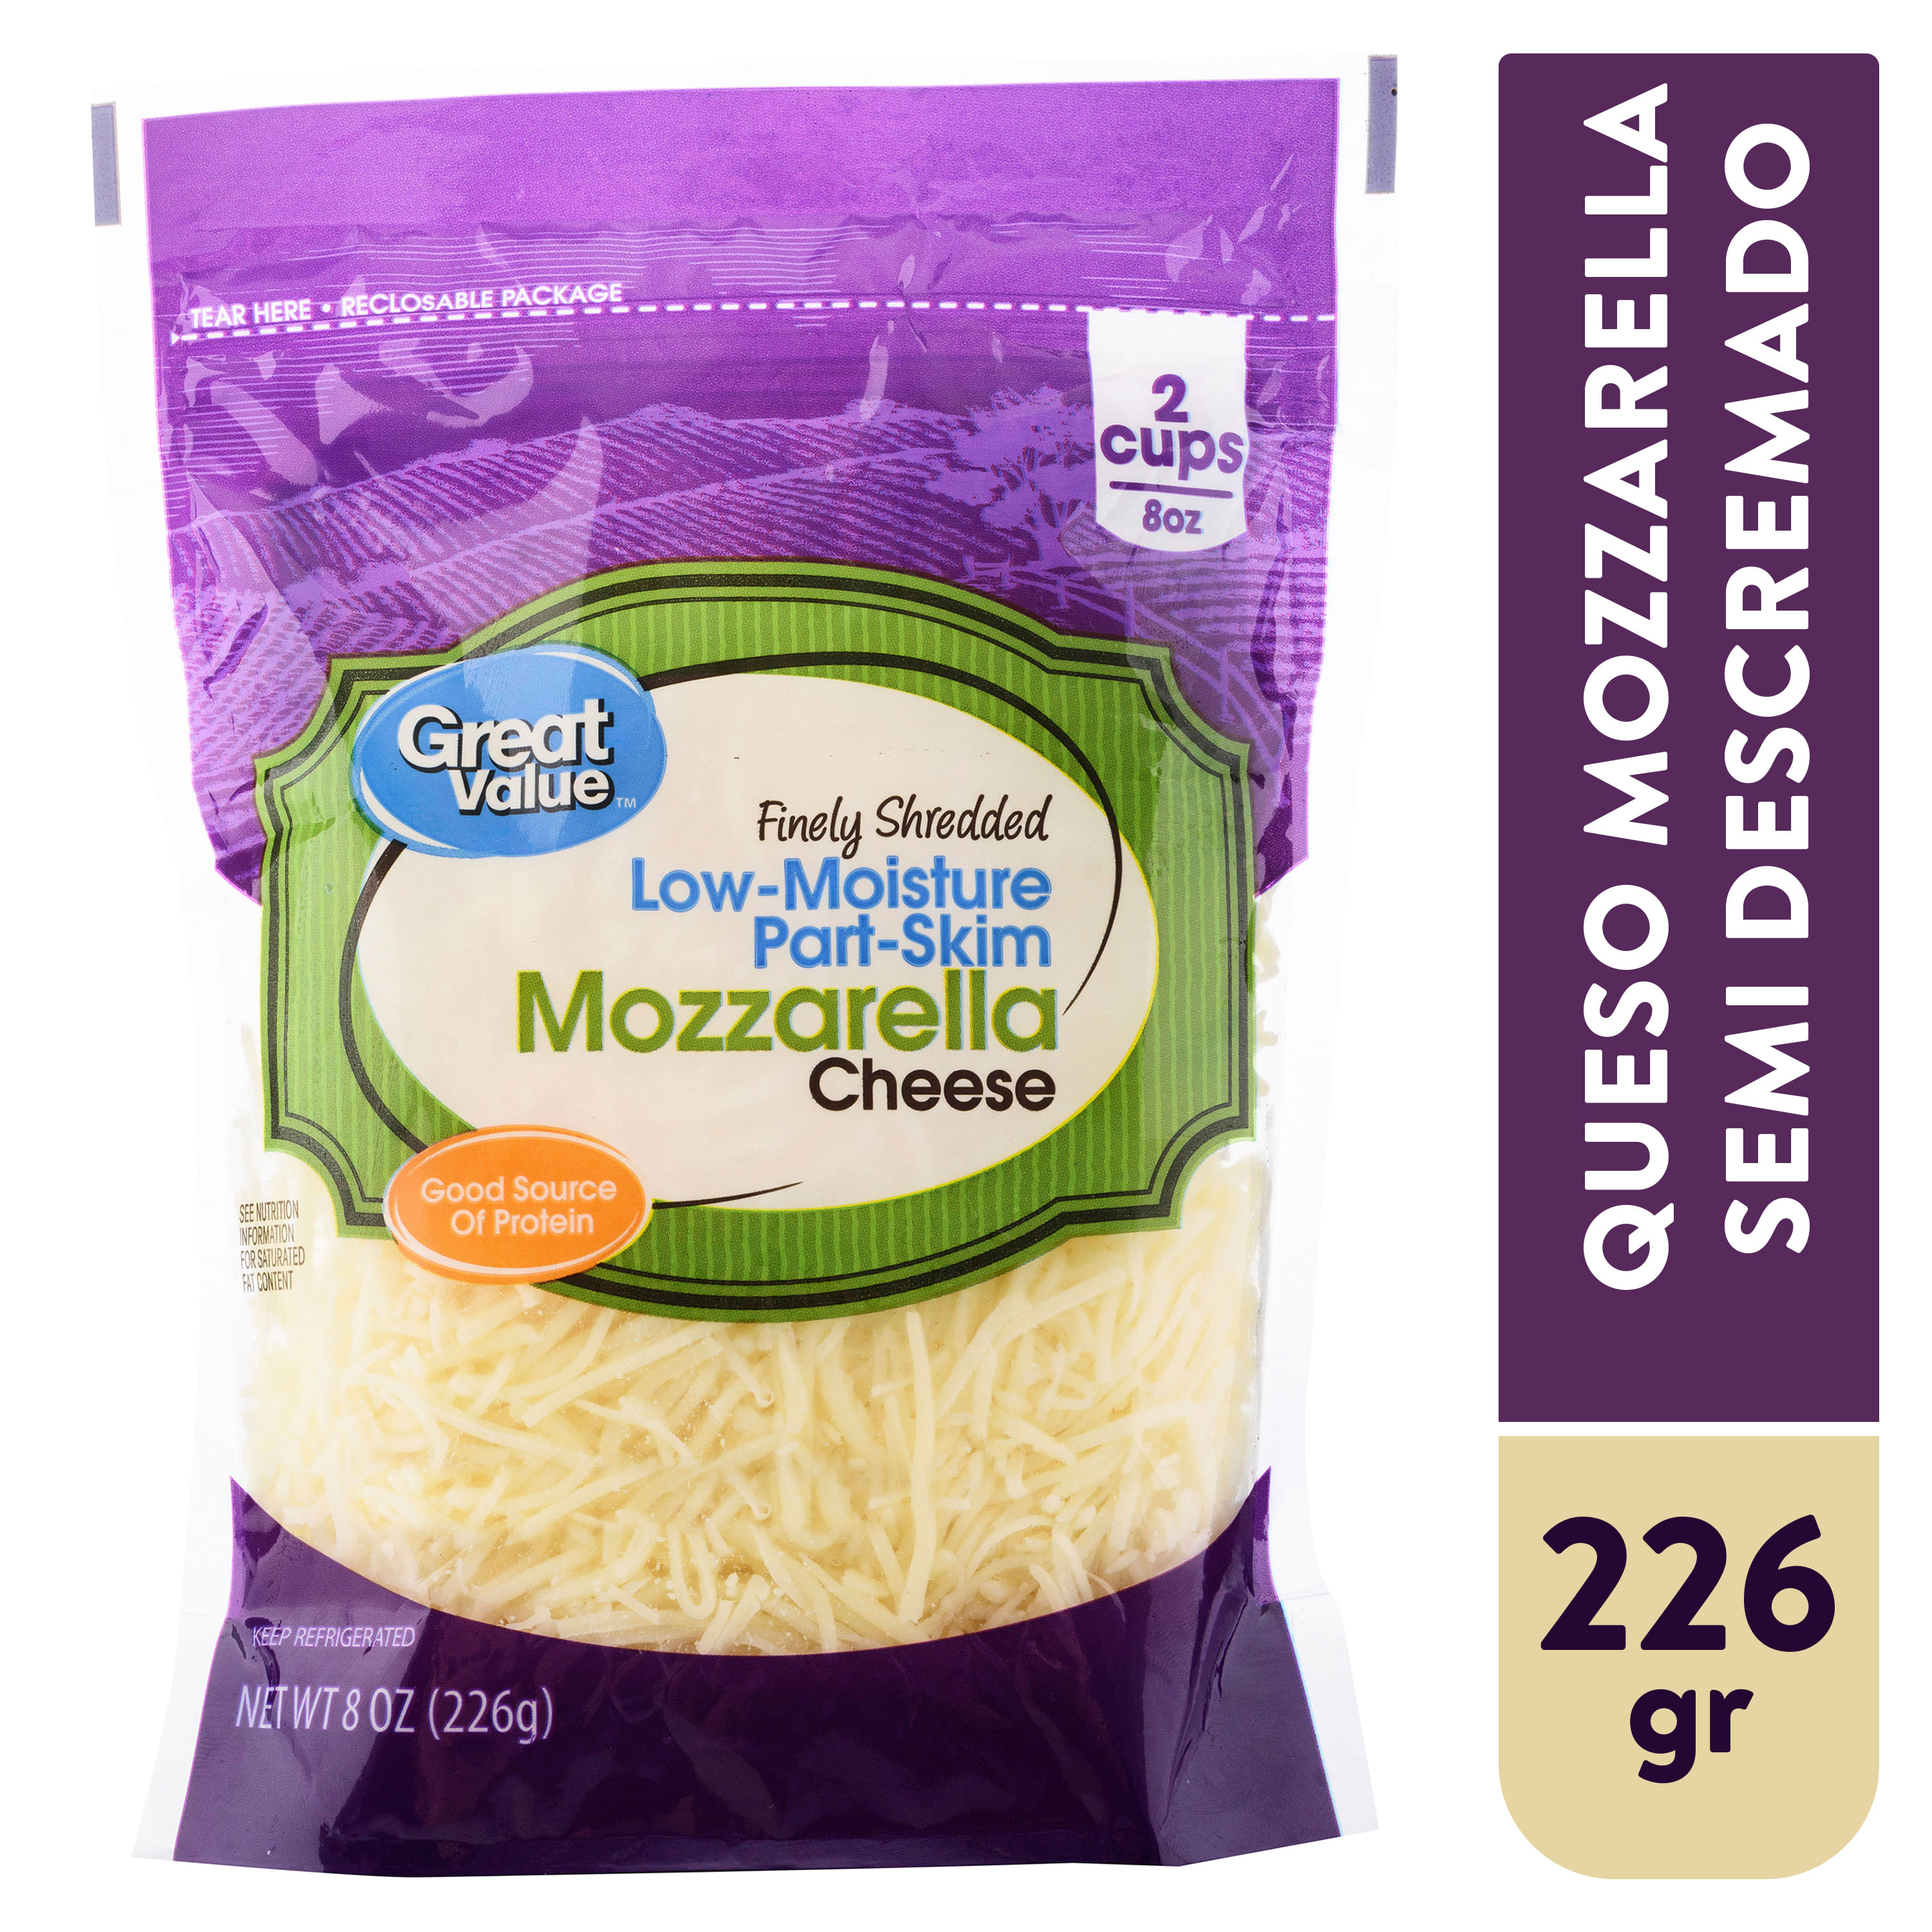 Queso-Great-Value-Mozzarella-Rallado-226gr-1-34104